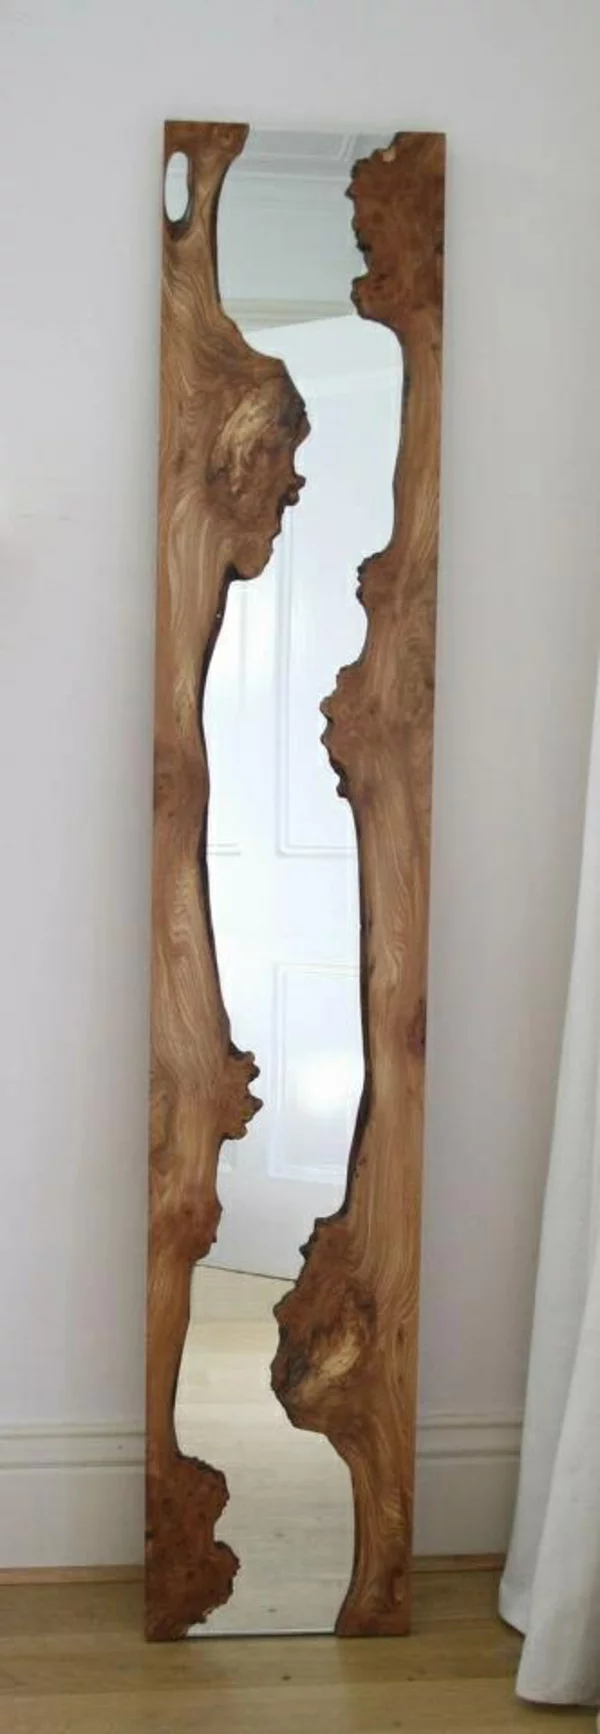 Wandgestaltung im Flur Spiegel mit Holzrahmen interessante Idee für rustikale Wanddeko aus Holz 